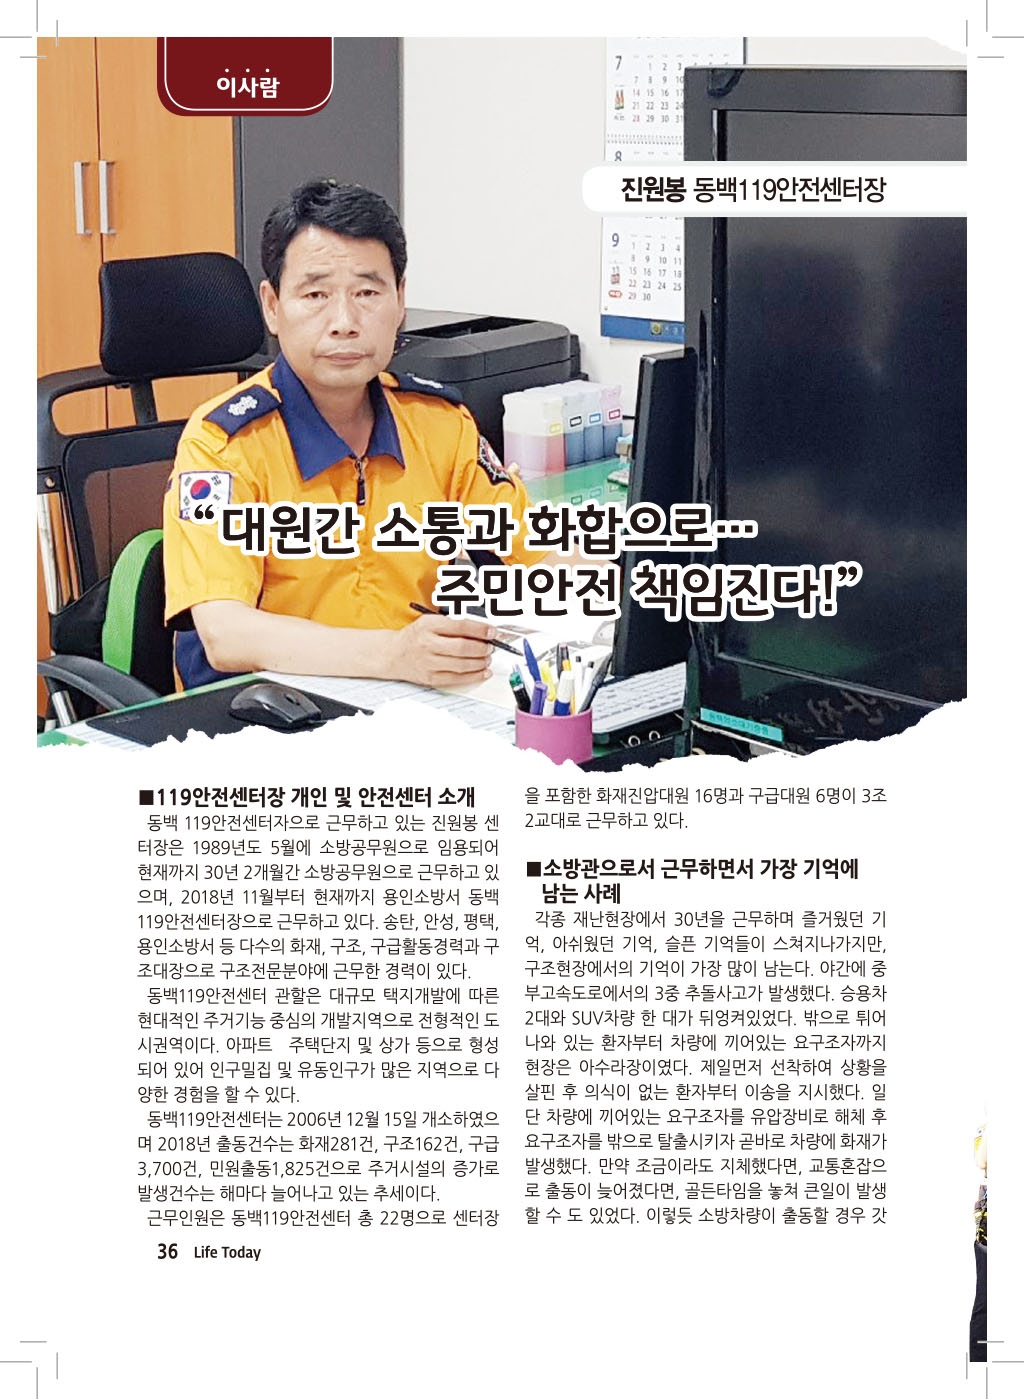 이사람-용인소방서 동백119안전센터장 소방경 진원봉 (19년 7월)